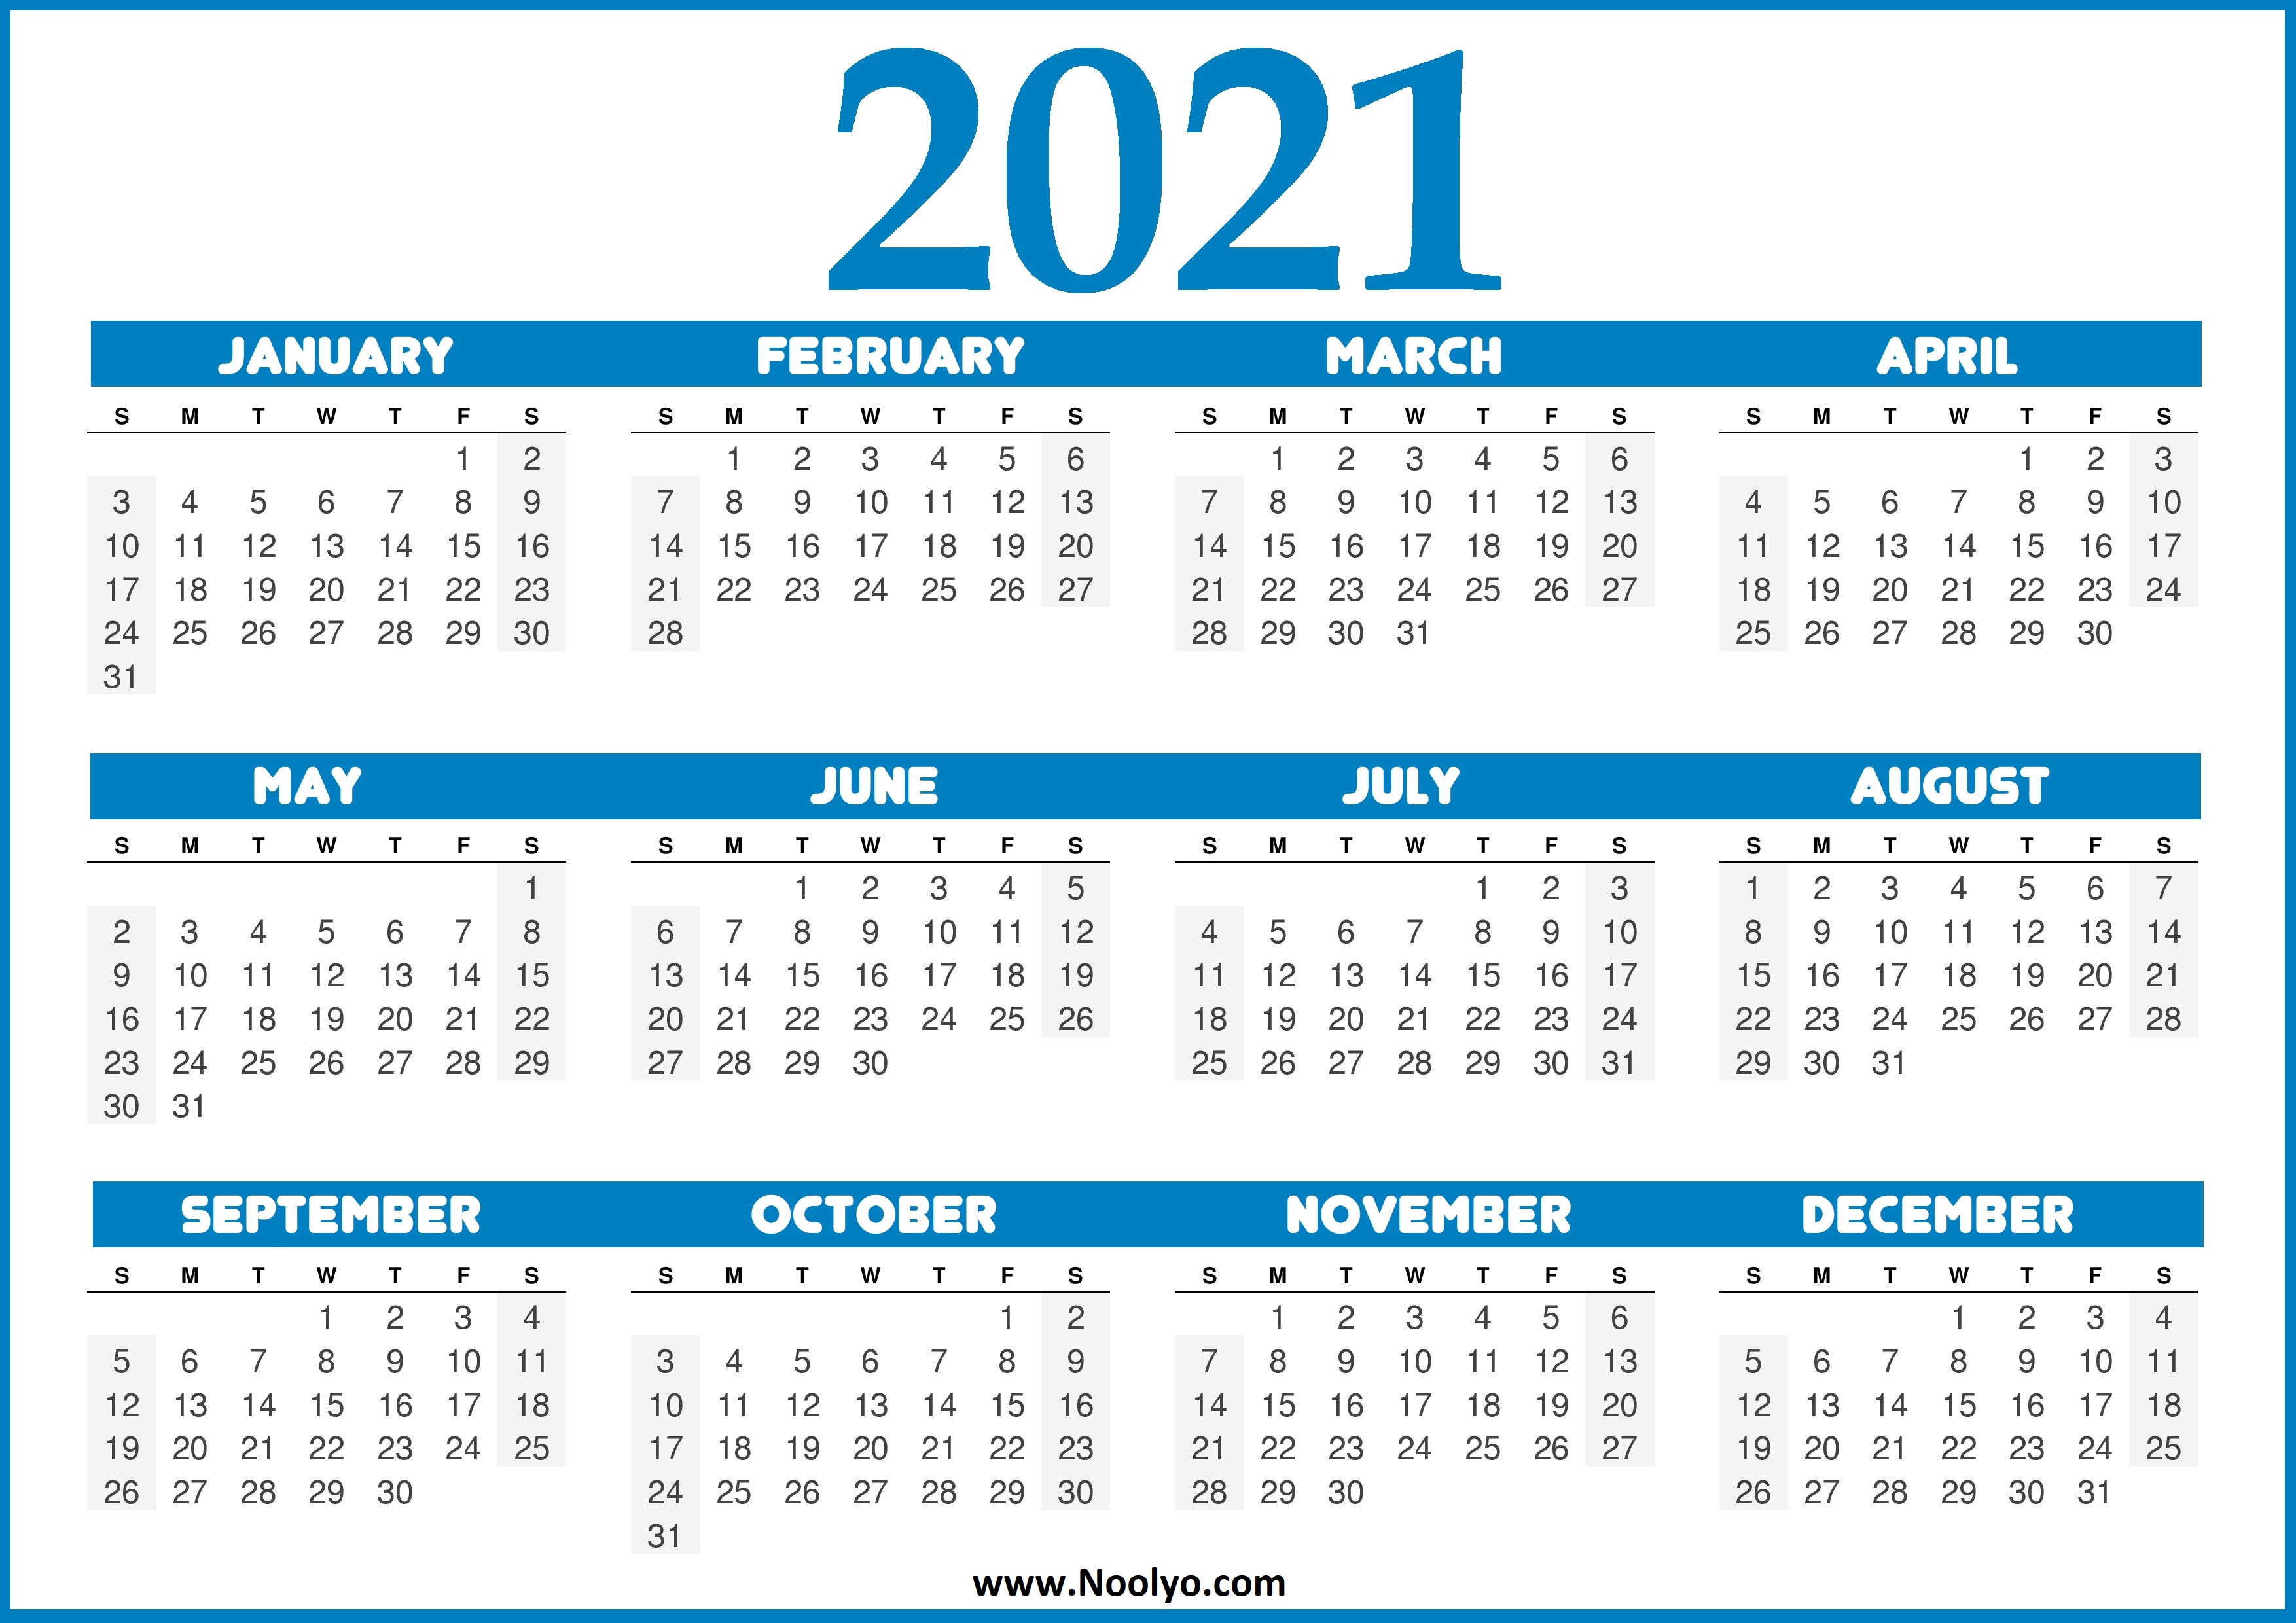 US Calendar 2021 - United States 2021 Calendar - Noolyo.com